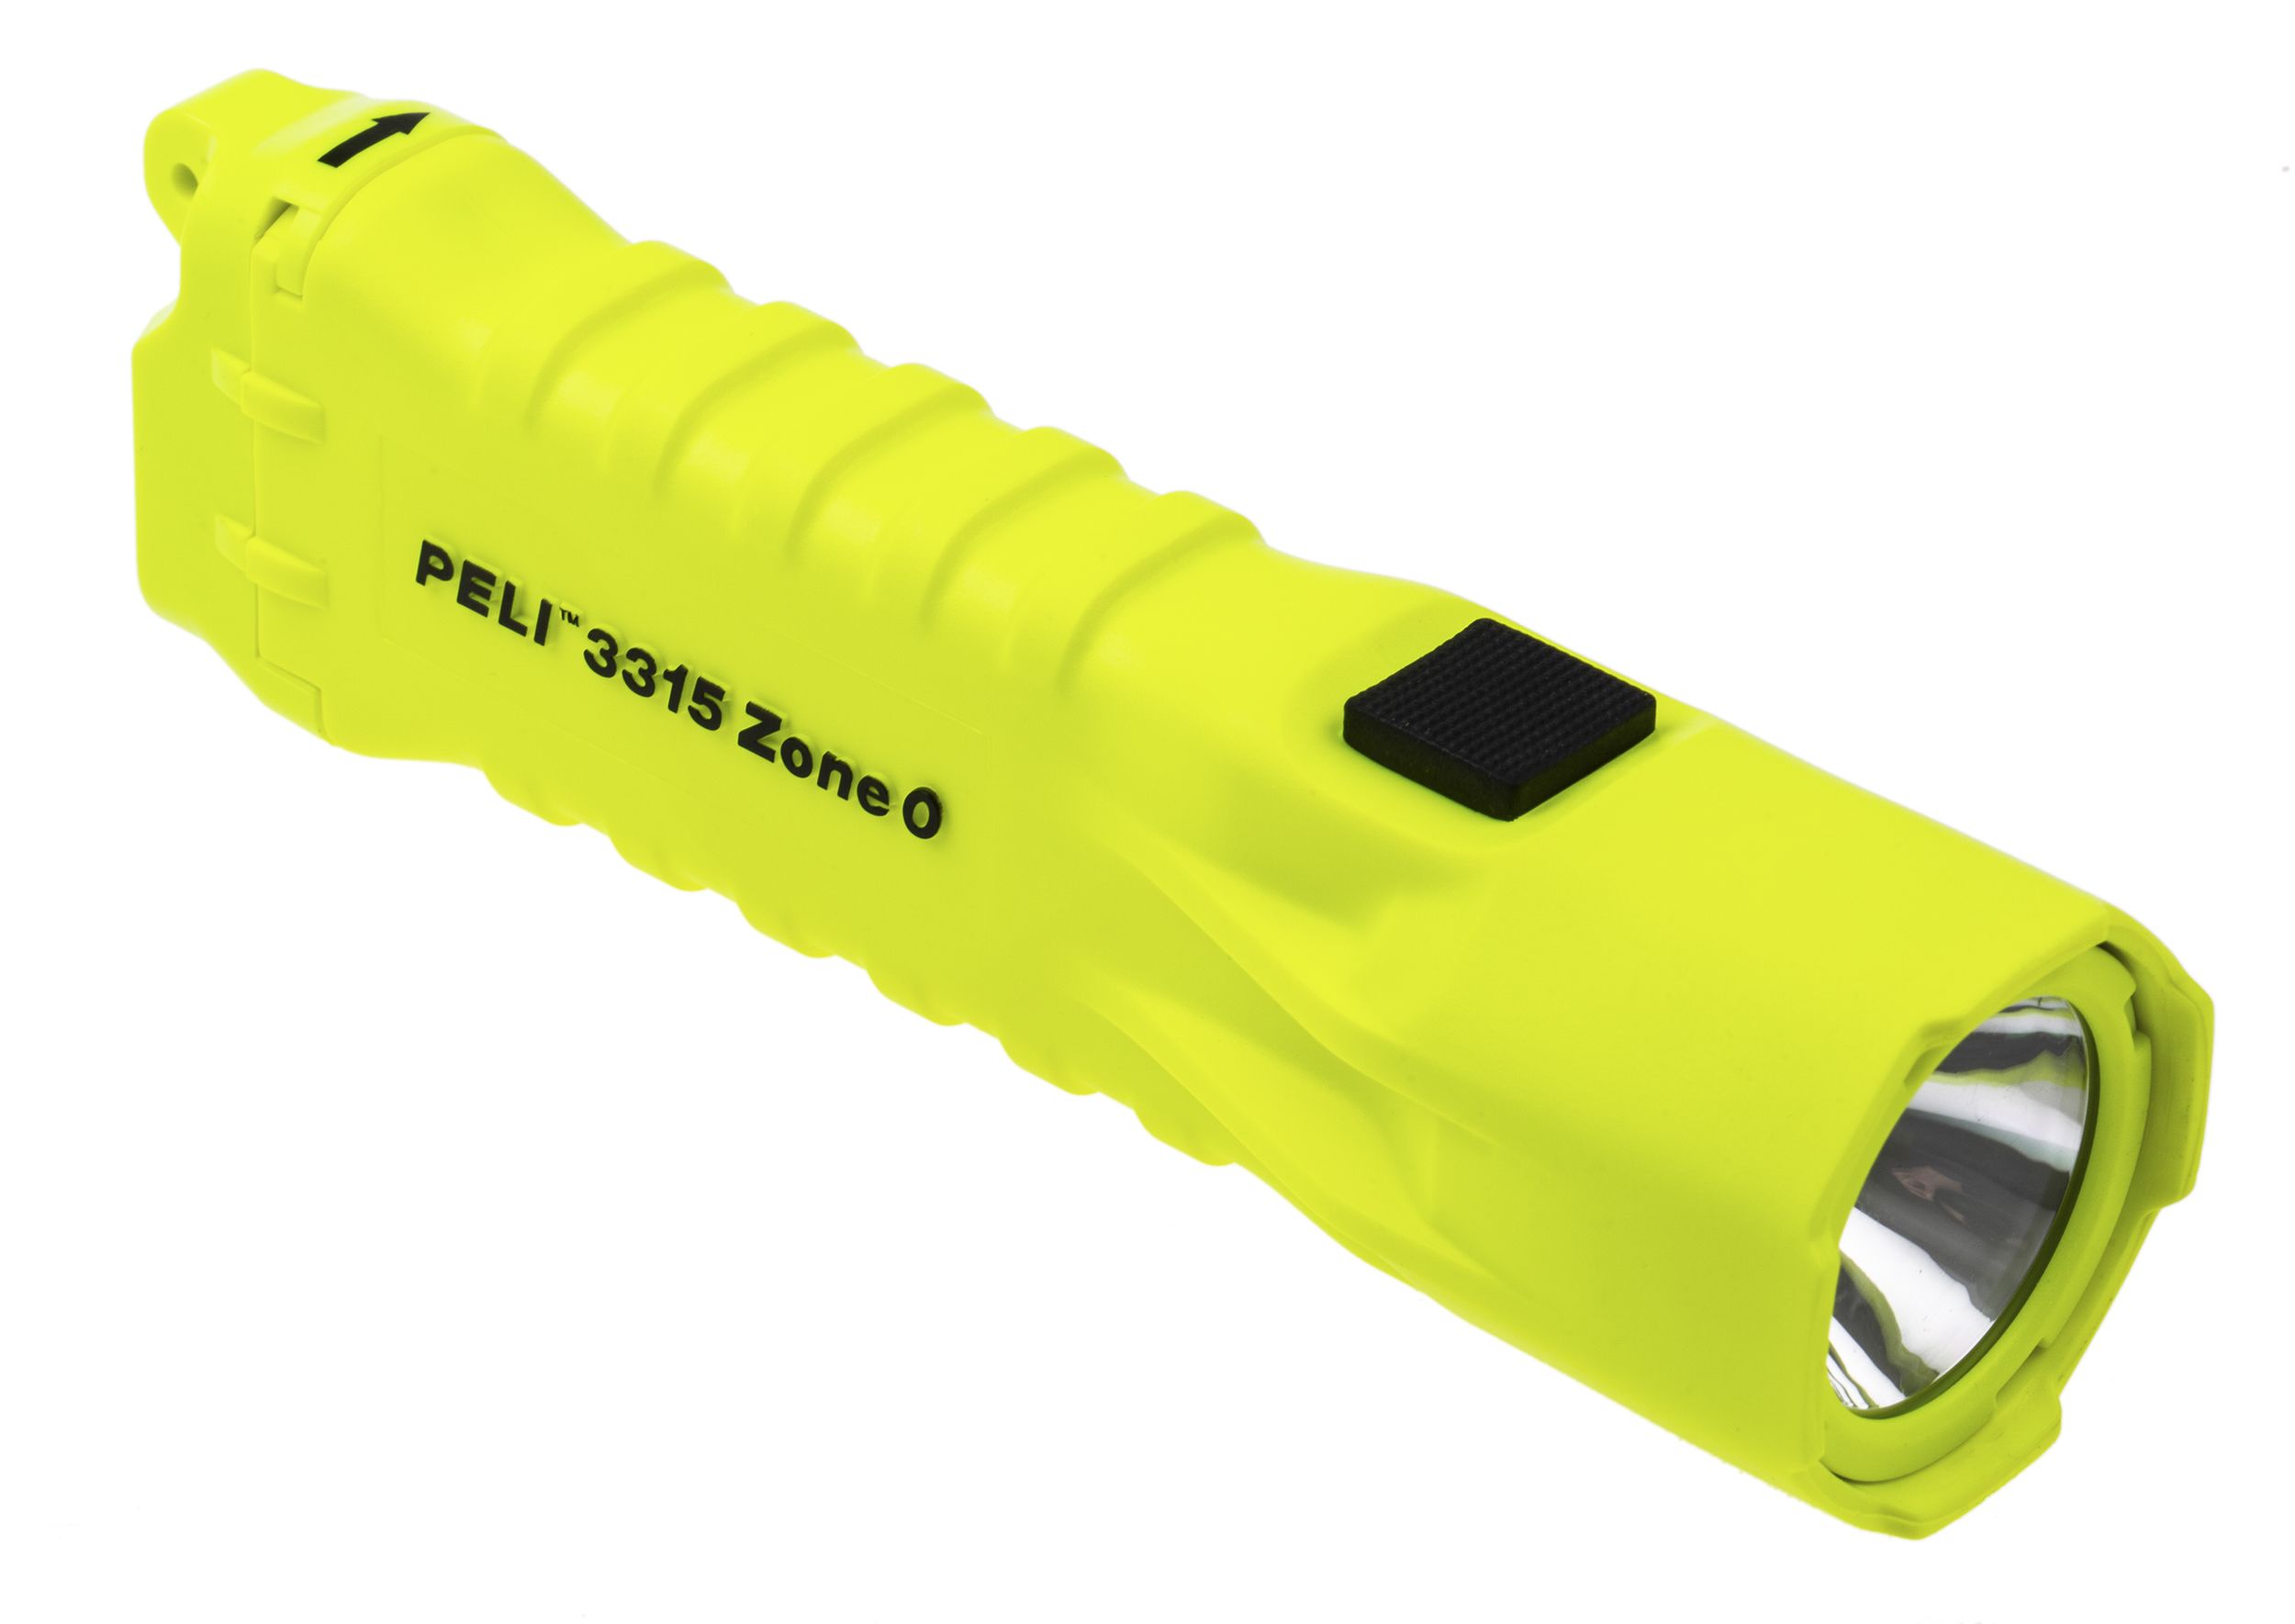 Peli 3315 Taschenlampe LED Gelb im Plastik-Gehäuse, 110 lm / 164 m, 156 mm ATEX-Zulassung